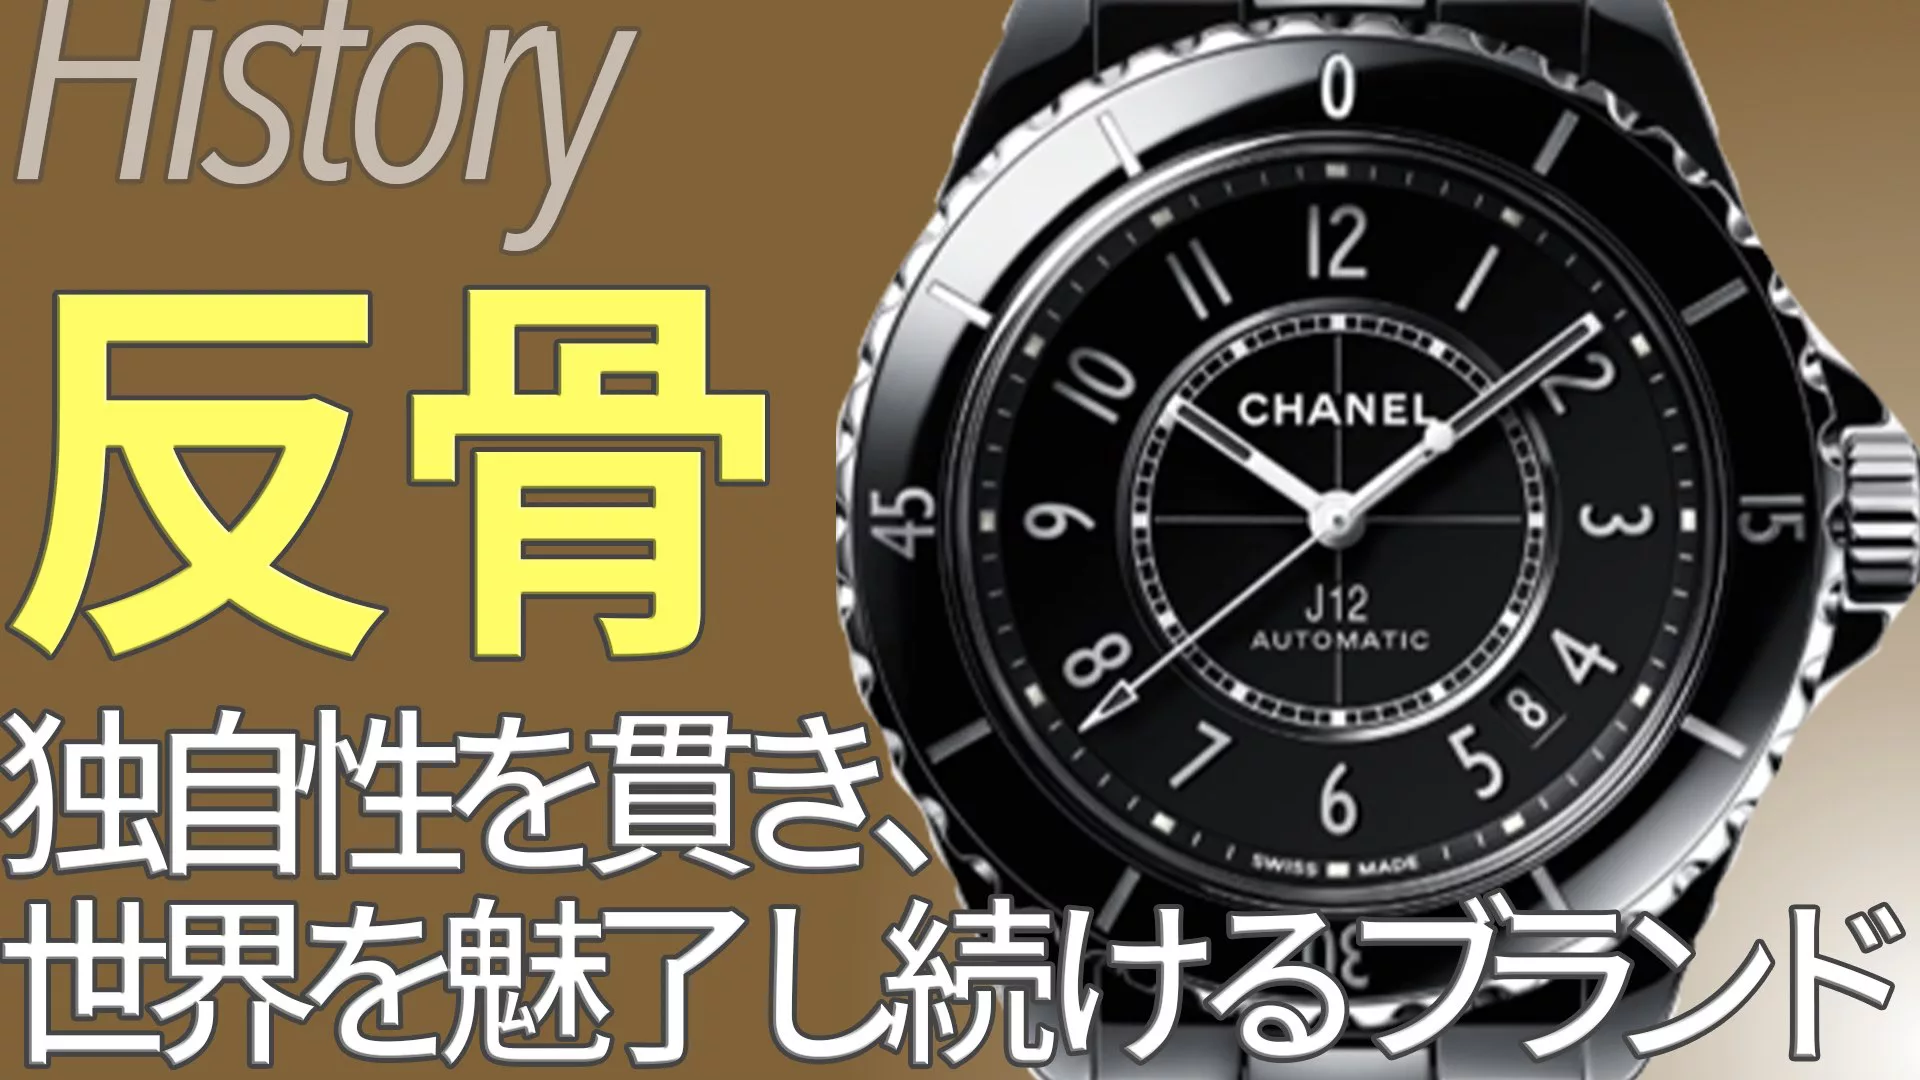 シャネル Chanel とは ブランド誕生と時計コレクションの歴史 ウォッチ買取応援団 有名店のロレックス買取相場を比較 店舗検索